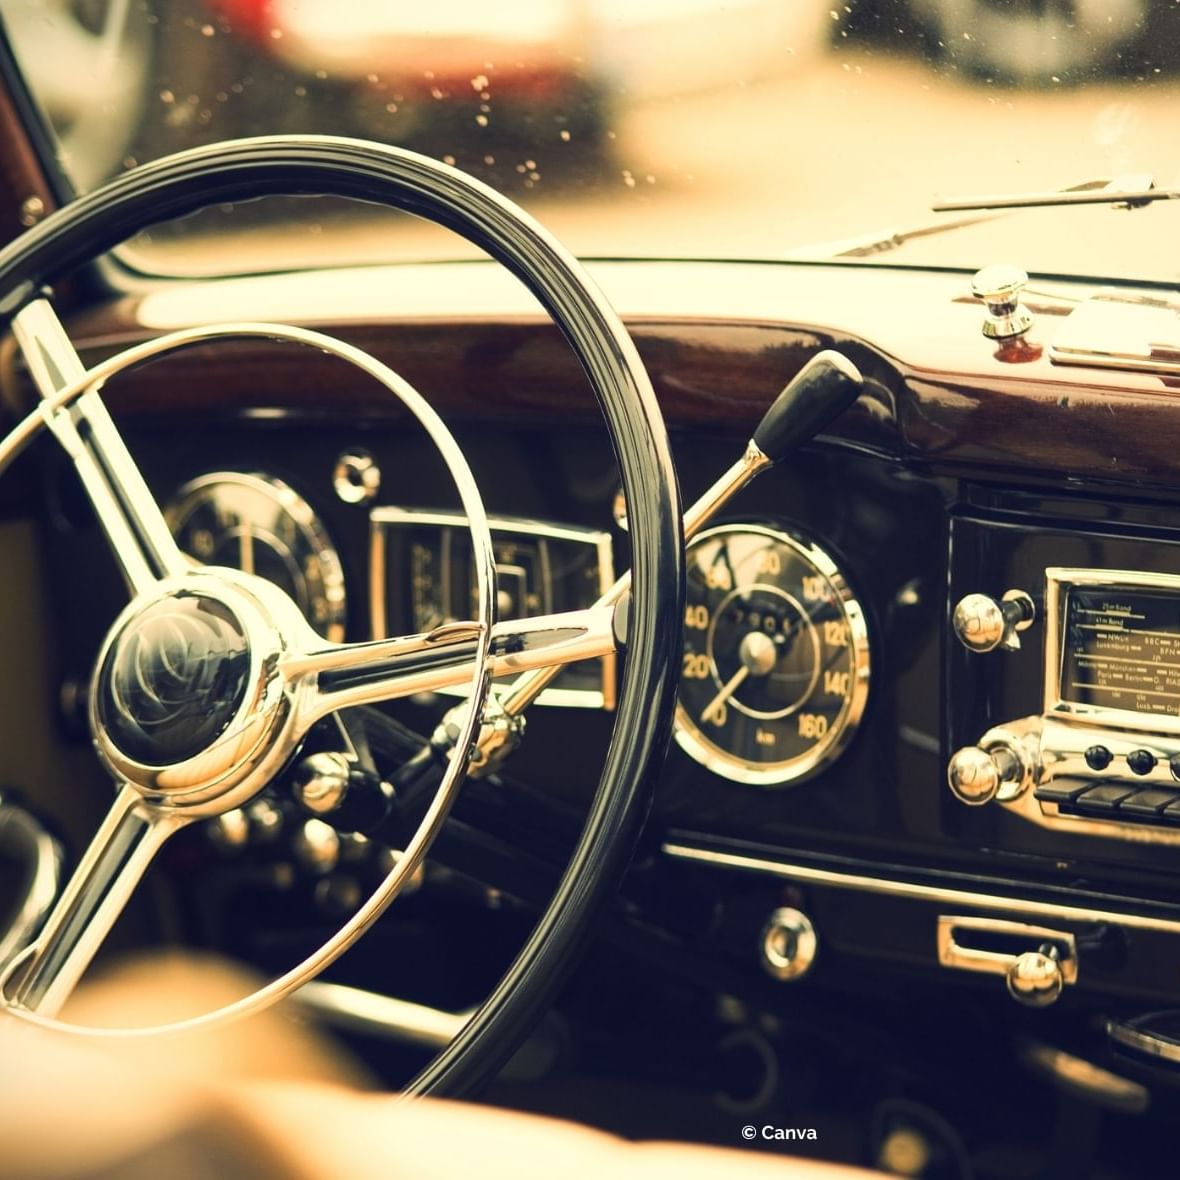 inside a vintage car